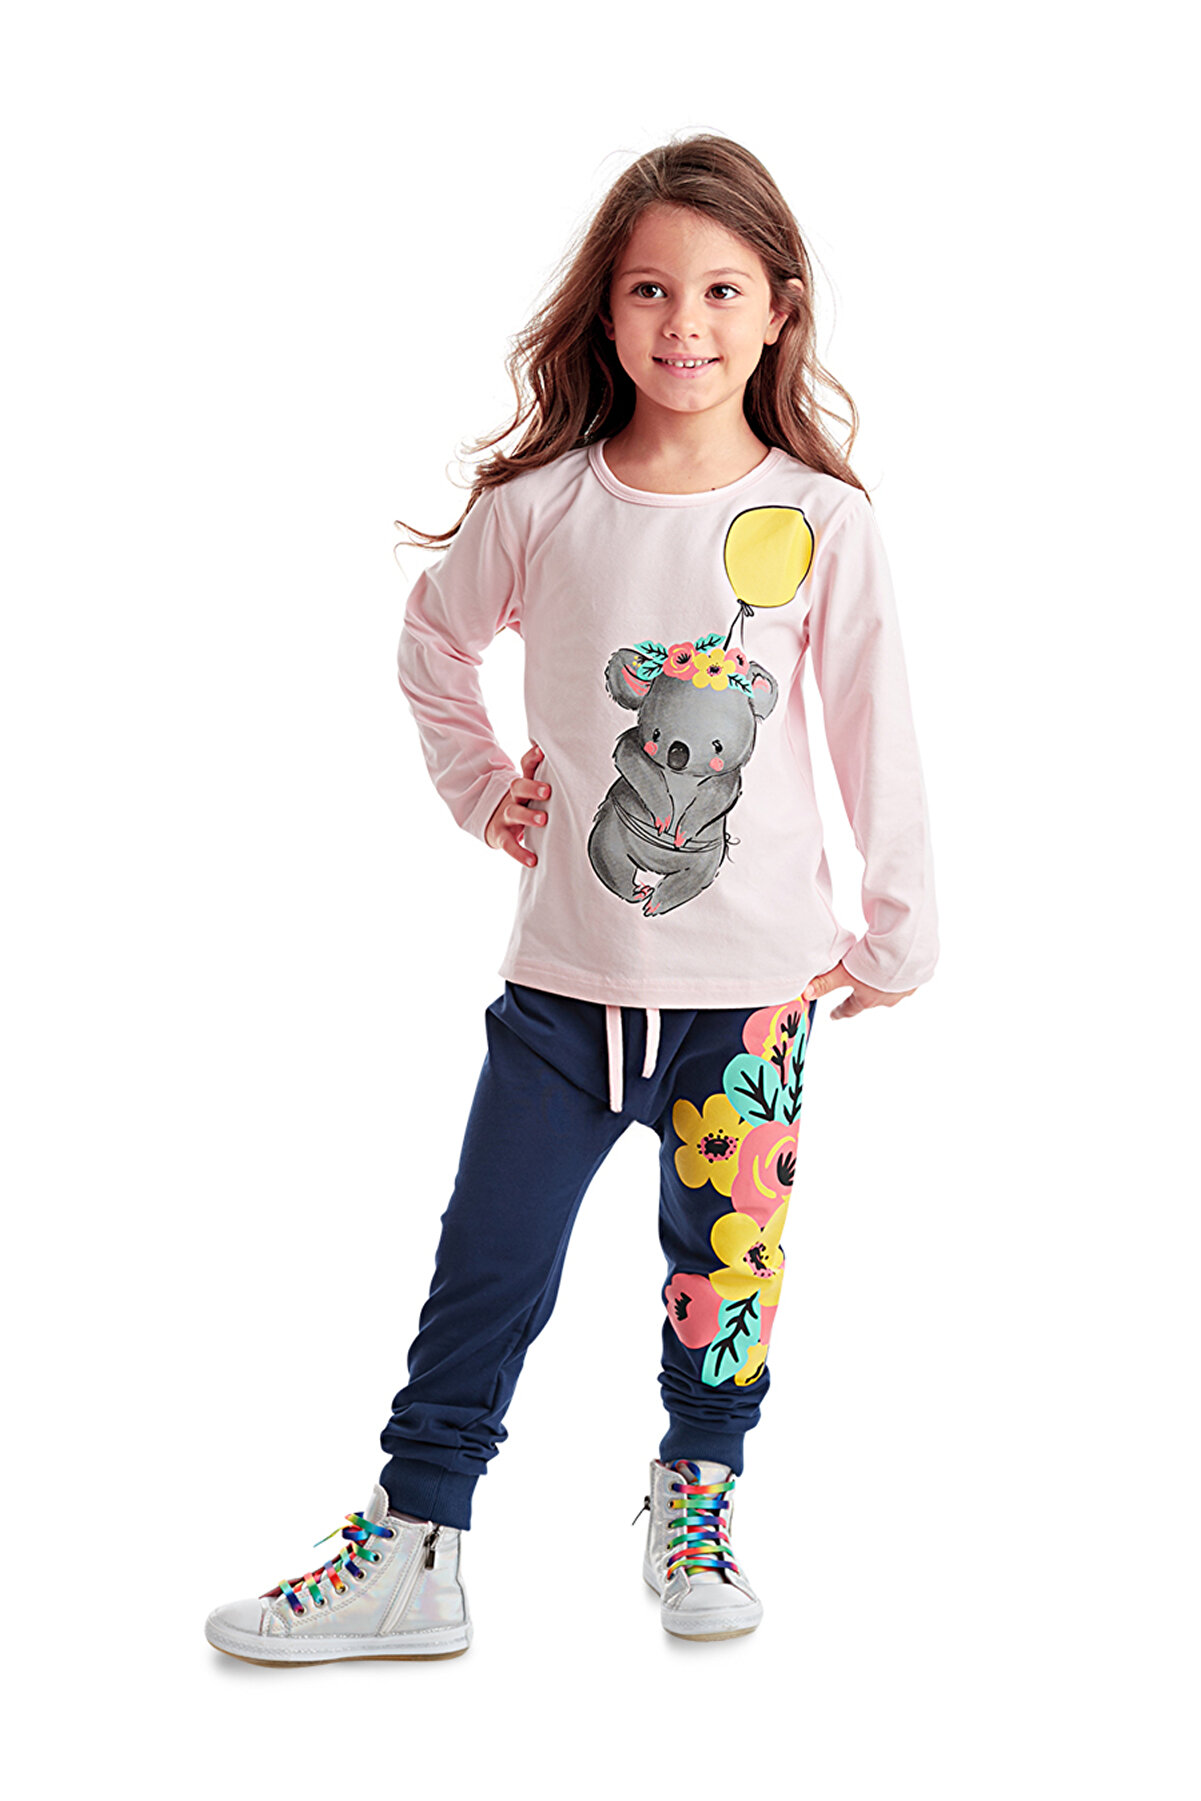 MSHB&G Balonlu Koala Kız Çocuk T-shirt Pantolon Takım